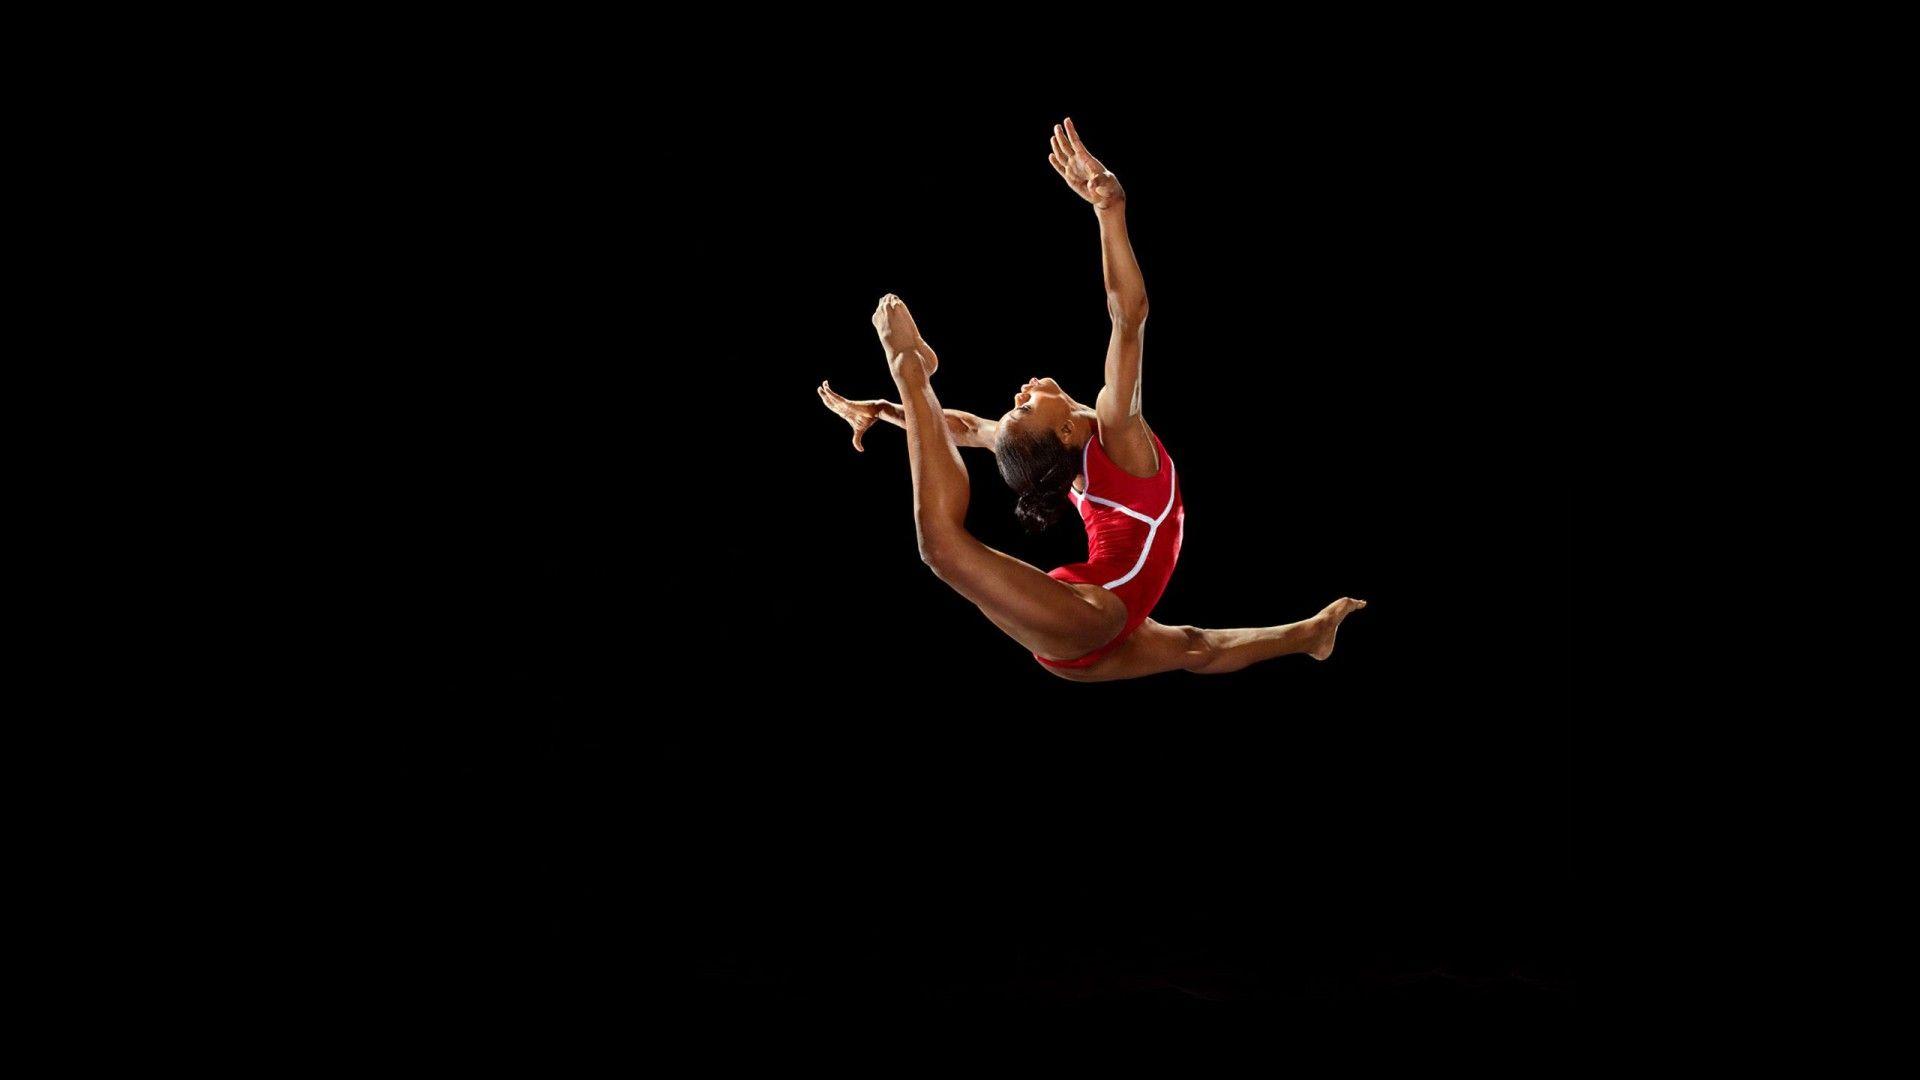 Desktop Pics: Gymnastics Wallpaper, Gymnastics Wallpaper #WHV86